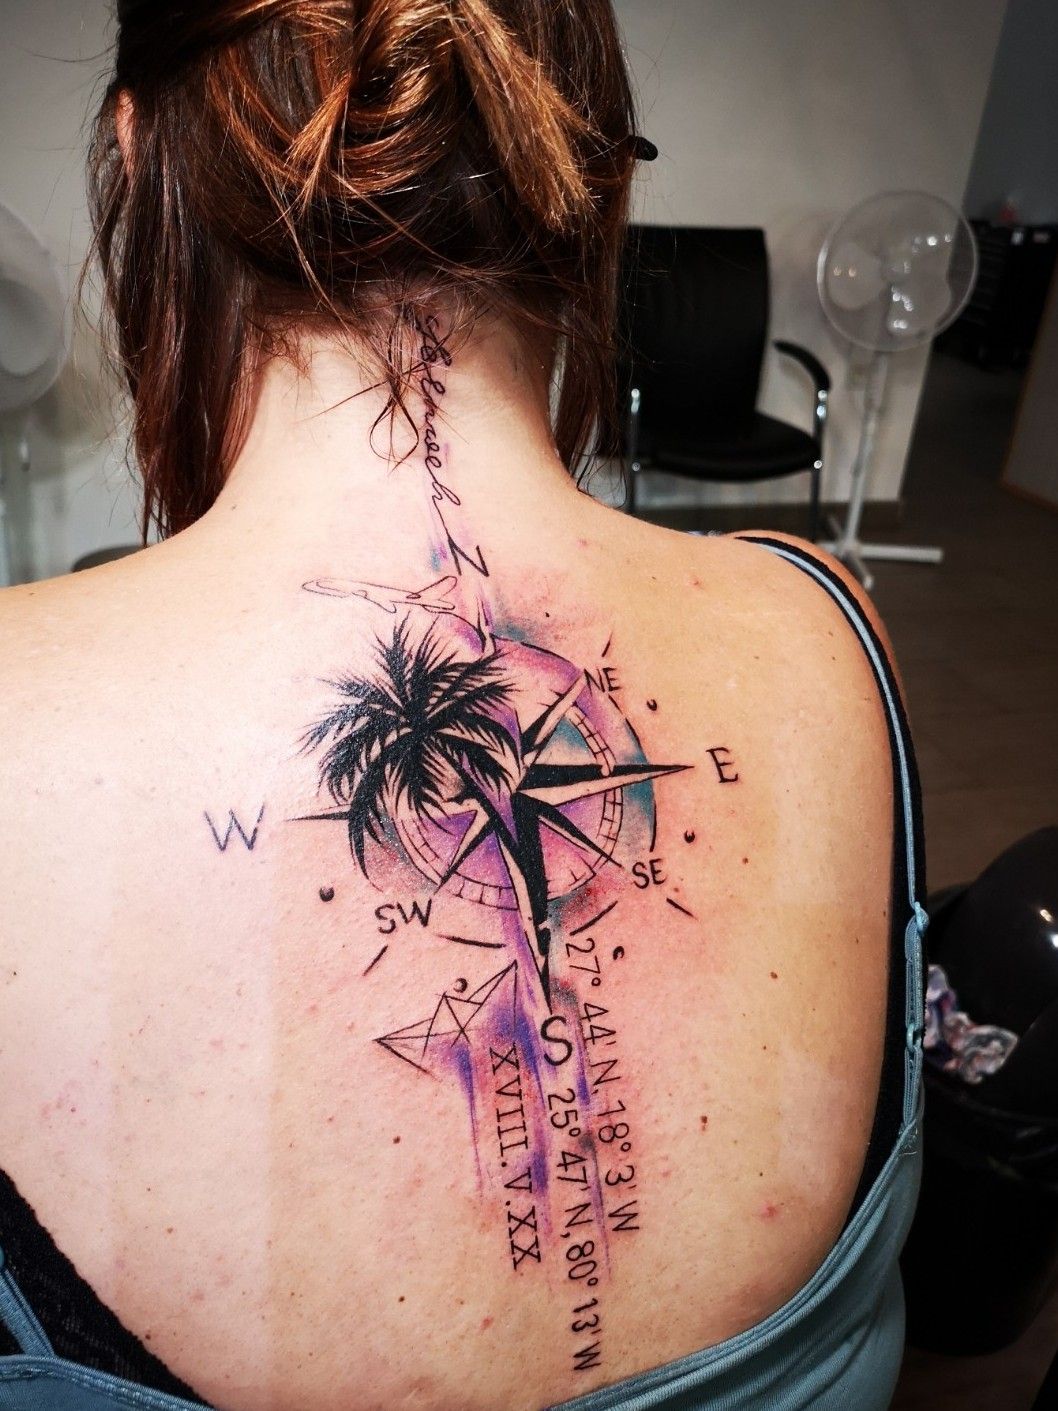 Back Arm Tattoo - Best Tattoo Ideas Gallery